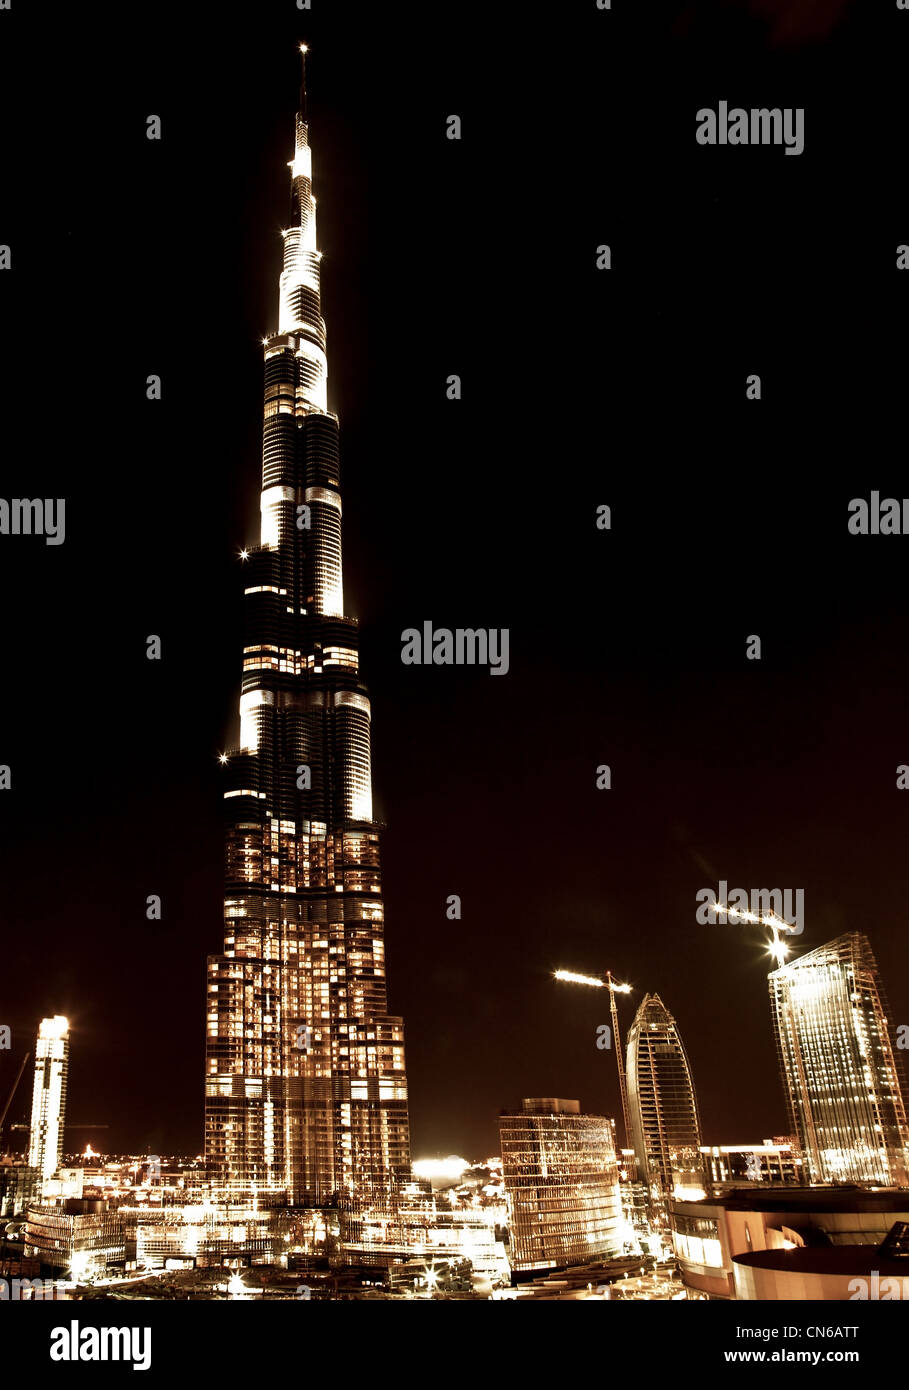 Dubai centro di scena notturna con luci della città nuova di lusso high tech città nel Medio Oriente, negli Emirati Arabi Uniti architettura Foto Stock